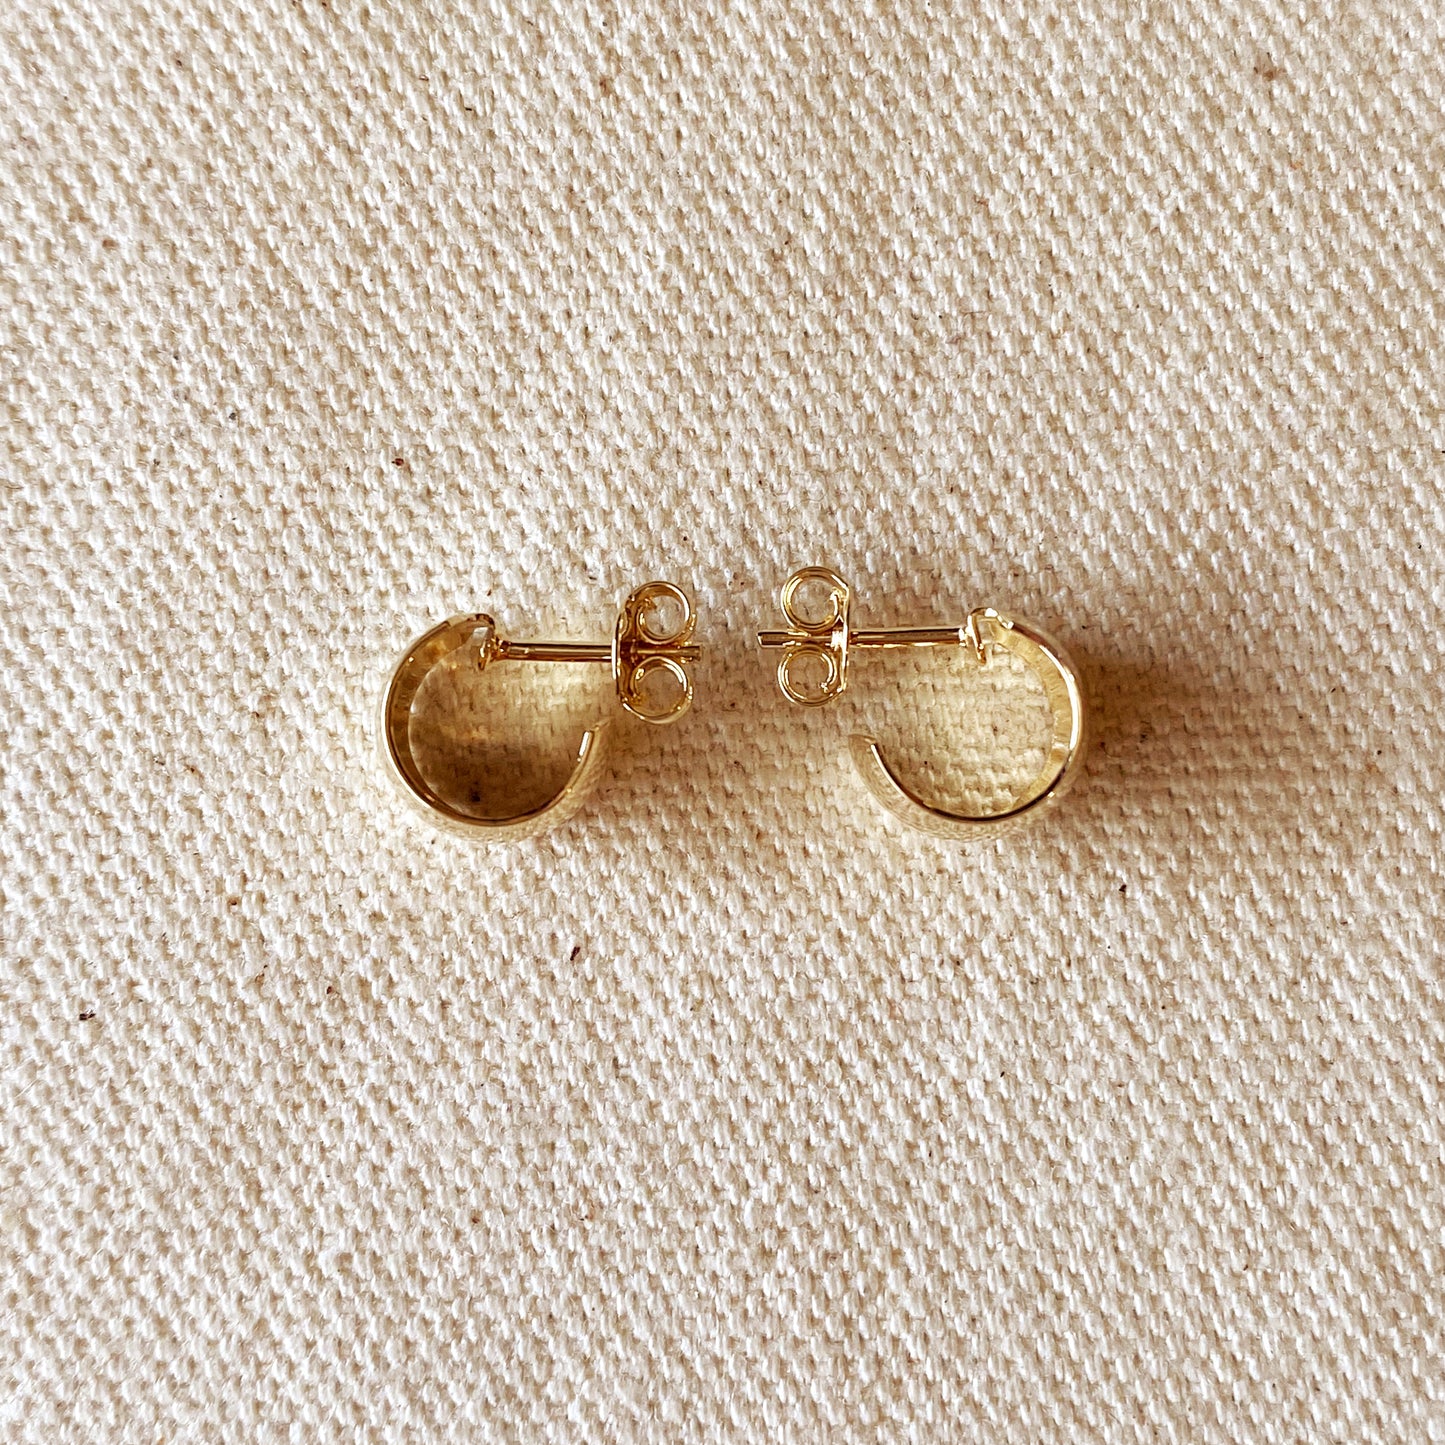 18k Gold Filled Half Open Stud Earrings